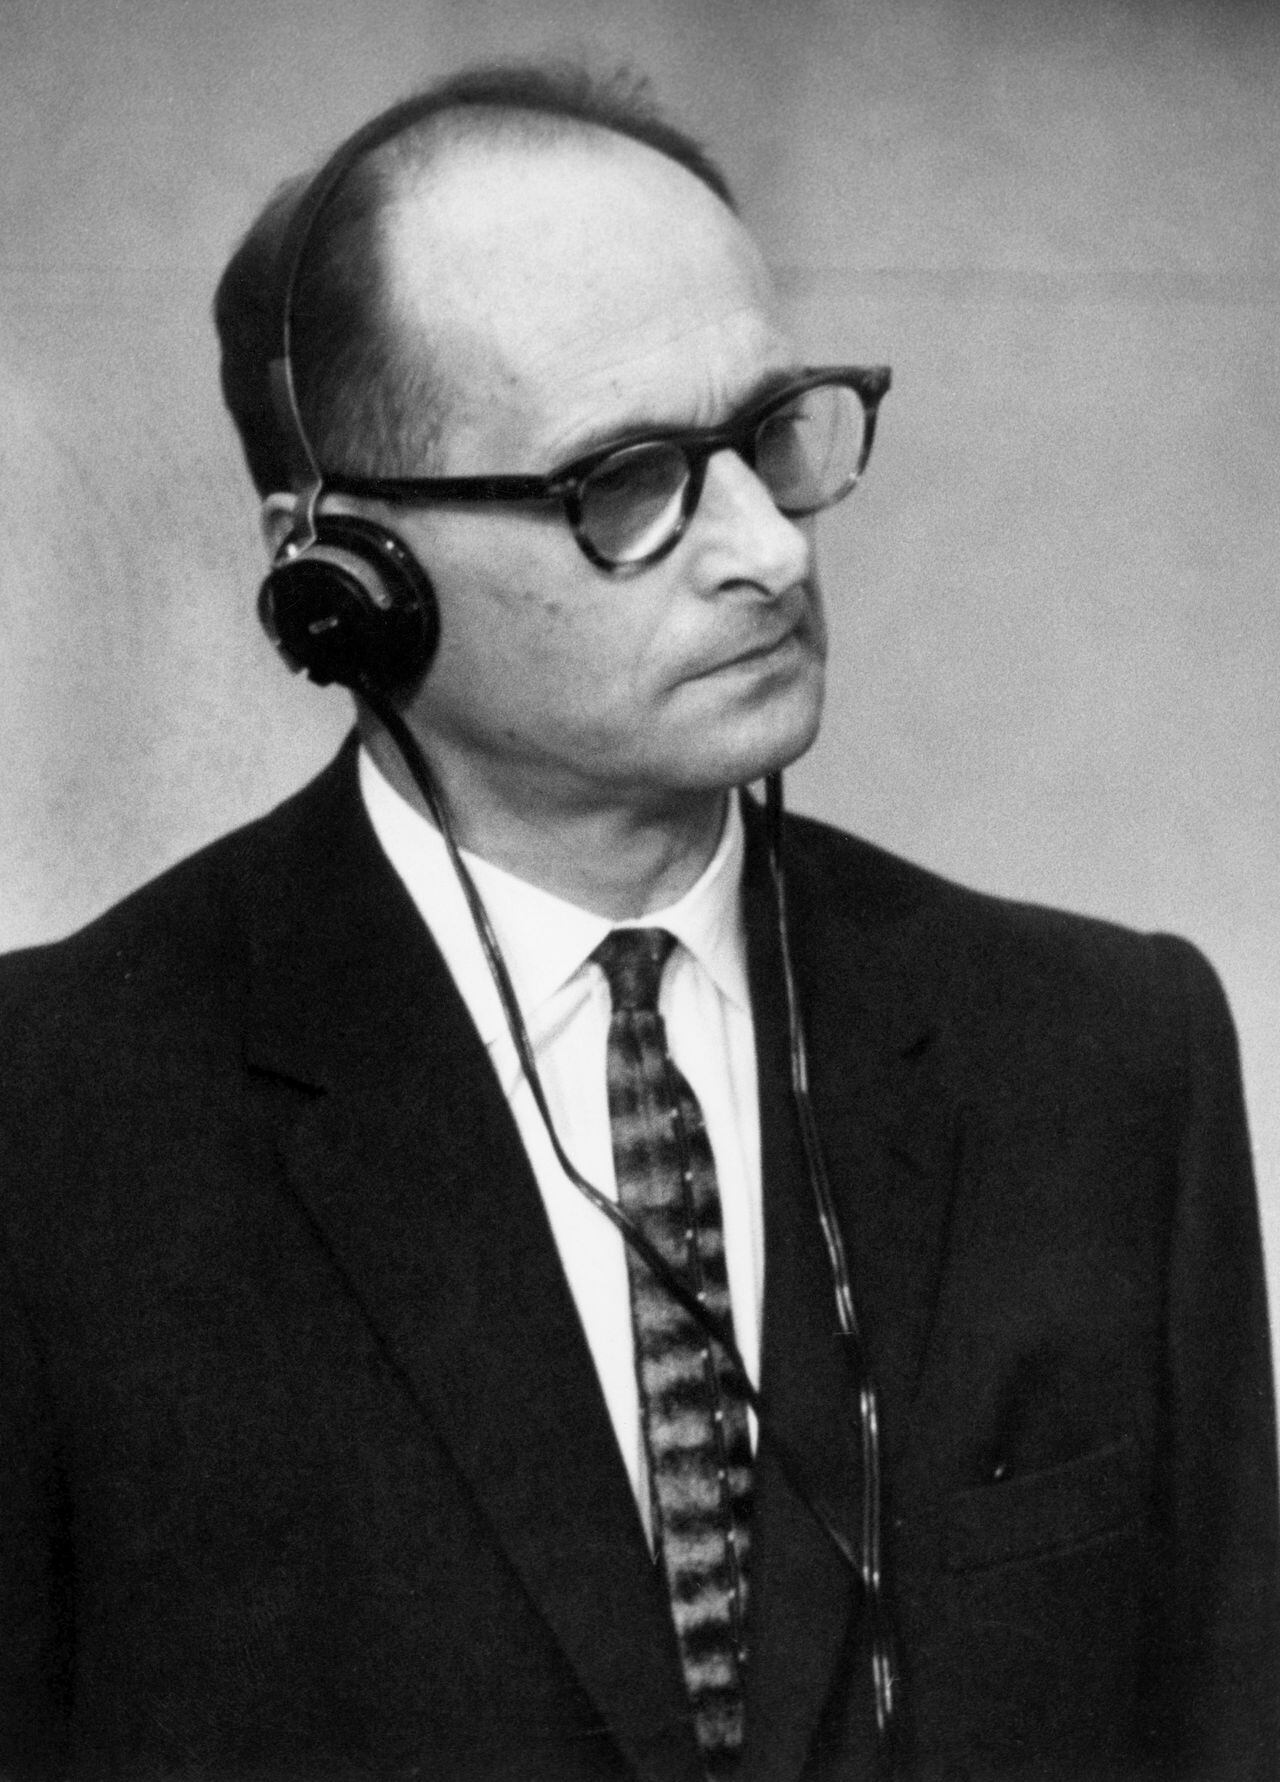 ISRAEL - 17 DE DICIEMBRE: Adolf Eichmann, en una cabina a prueba de balas, se pone los auriculares para escuchar la lectura del acto de acusación en su contra. A la izquierda está su abogado alemán Servatius. Eichmann, un burócrata nazi alemán, fue el primero a cargo de la exterminación el 17 de diciembre de 1961. (Foto de Keystone-France/Gamma-Keystone a través de Getty Images)